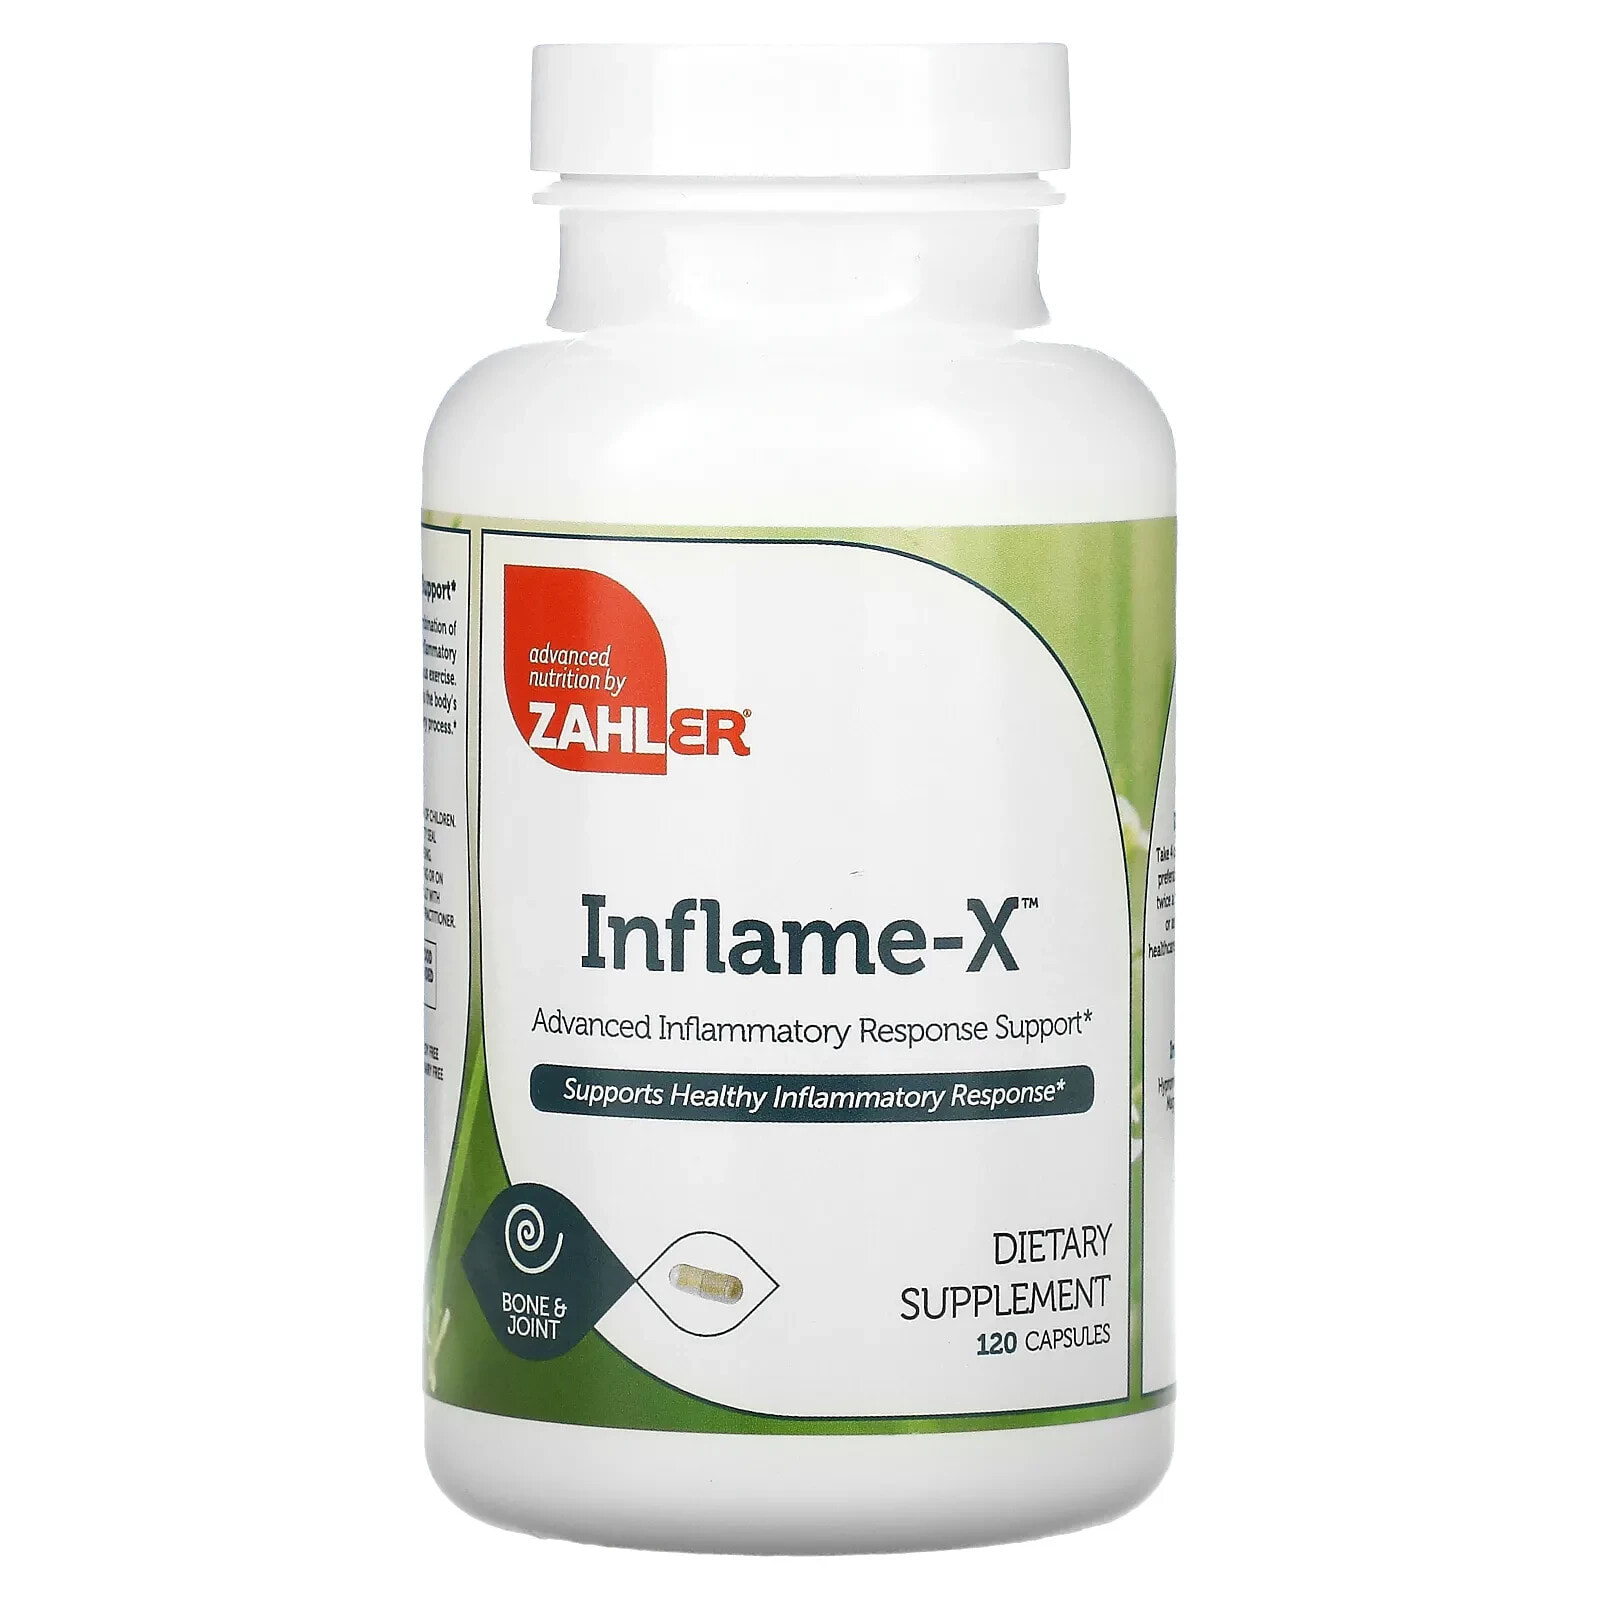 Залер, Inflame-X, улучшенная поддержка при воспалительной реакции, 120 растительных капсул